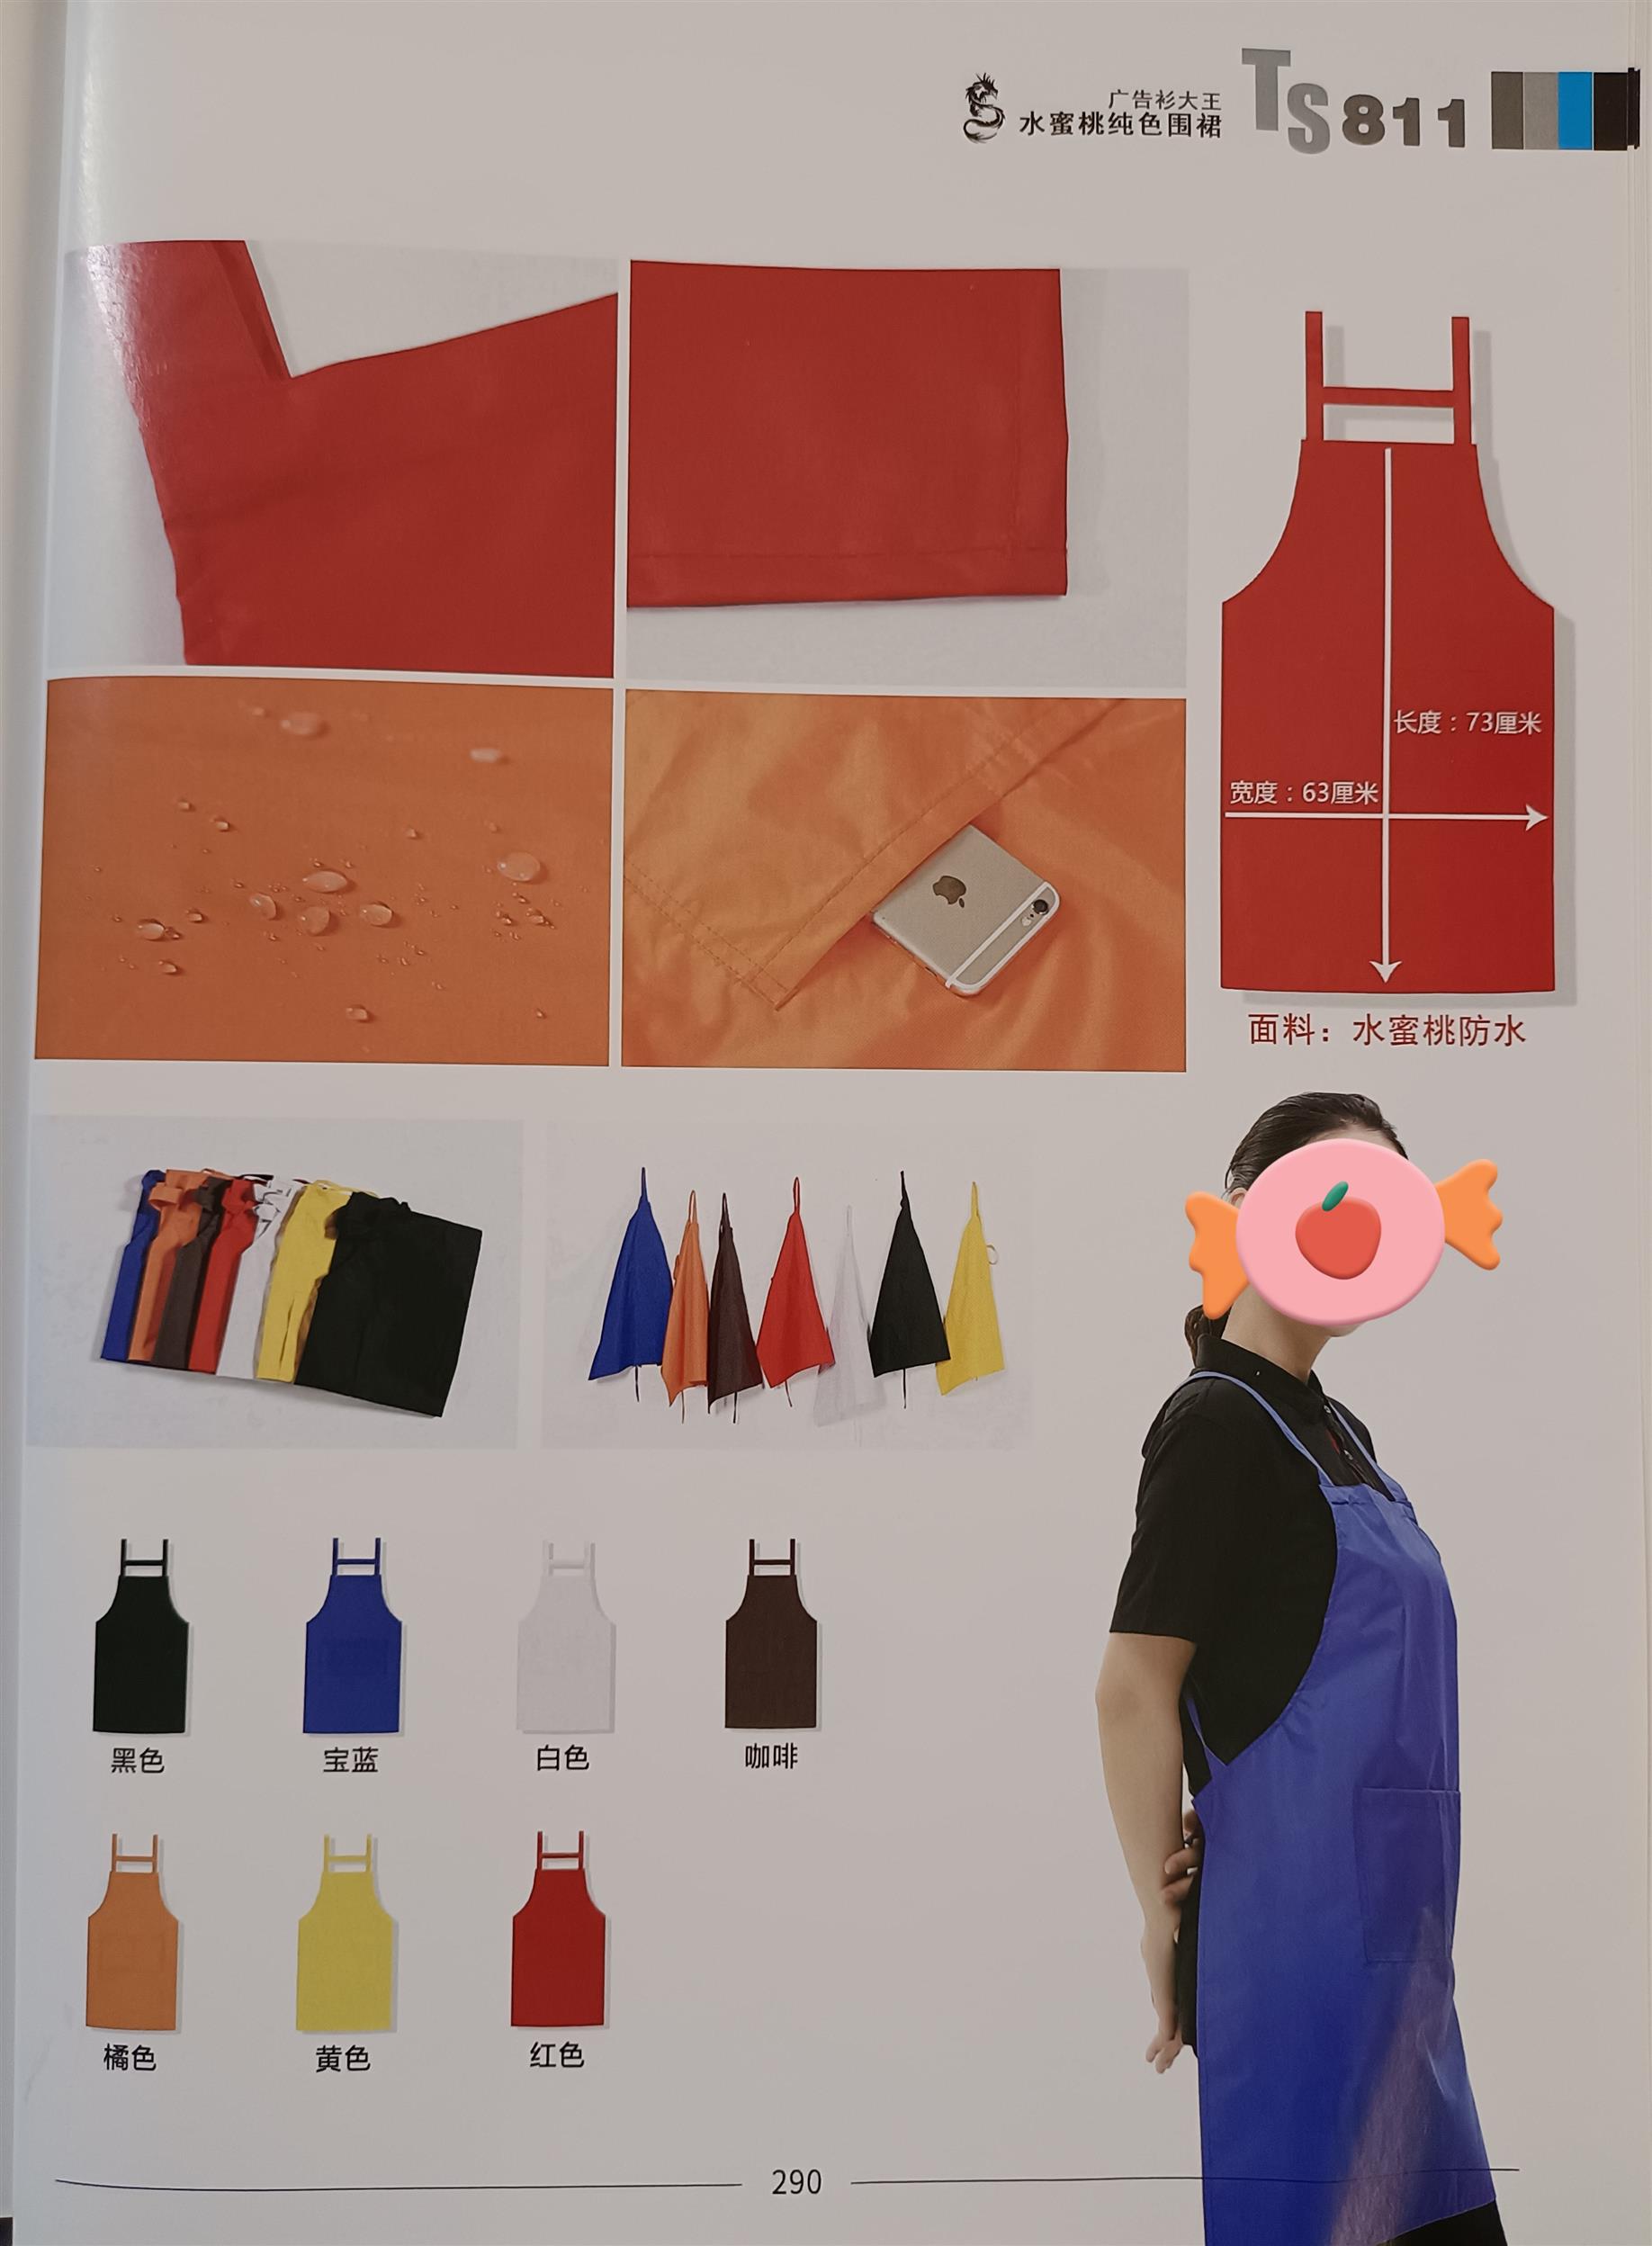 惠州生产围裙服装厂 东莞市茶山华升服装设计服务部